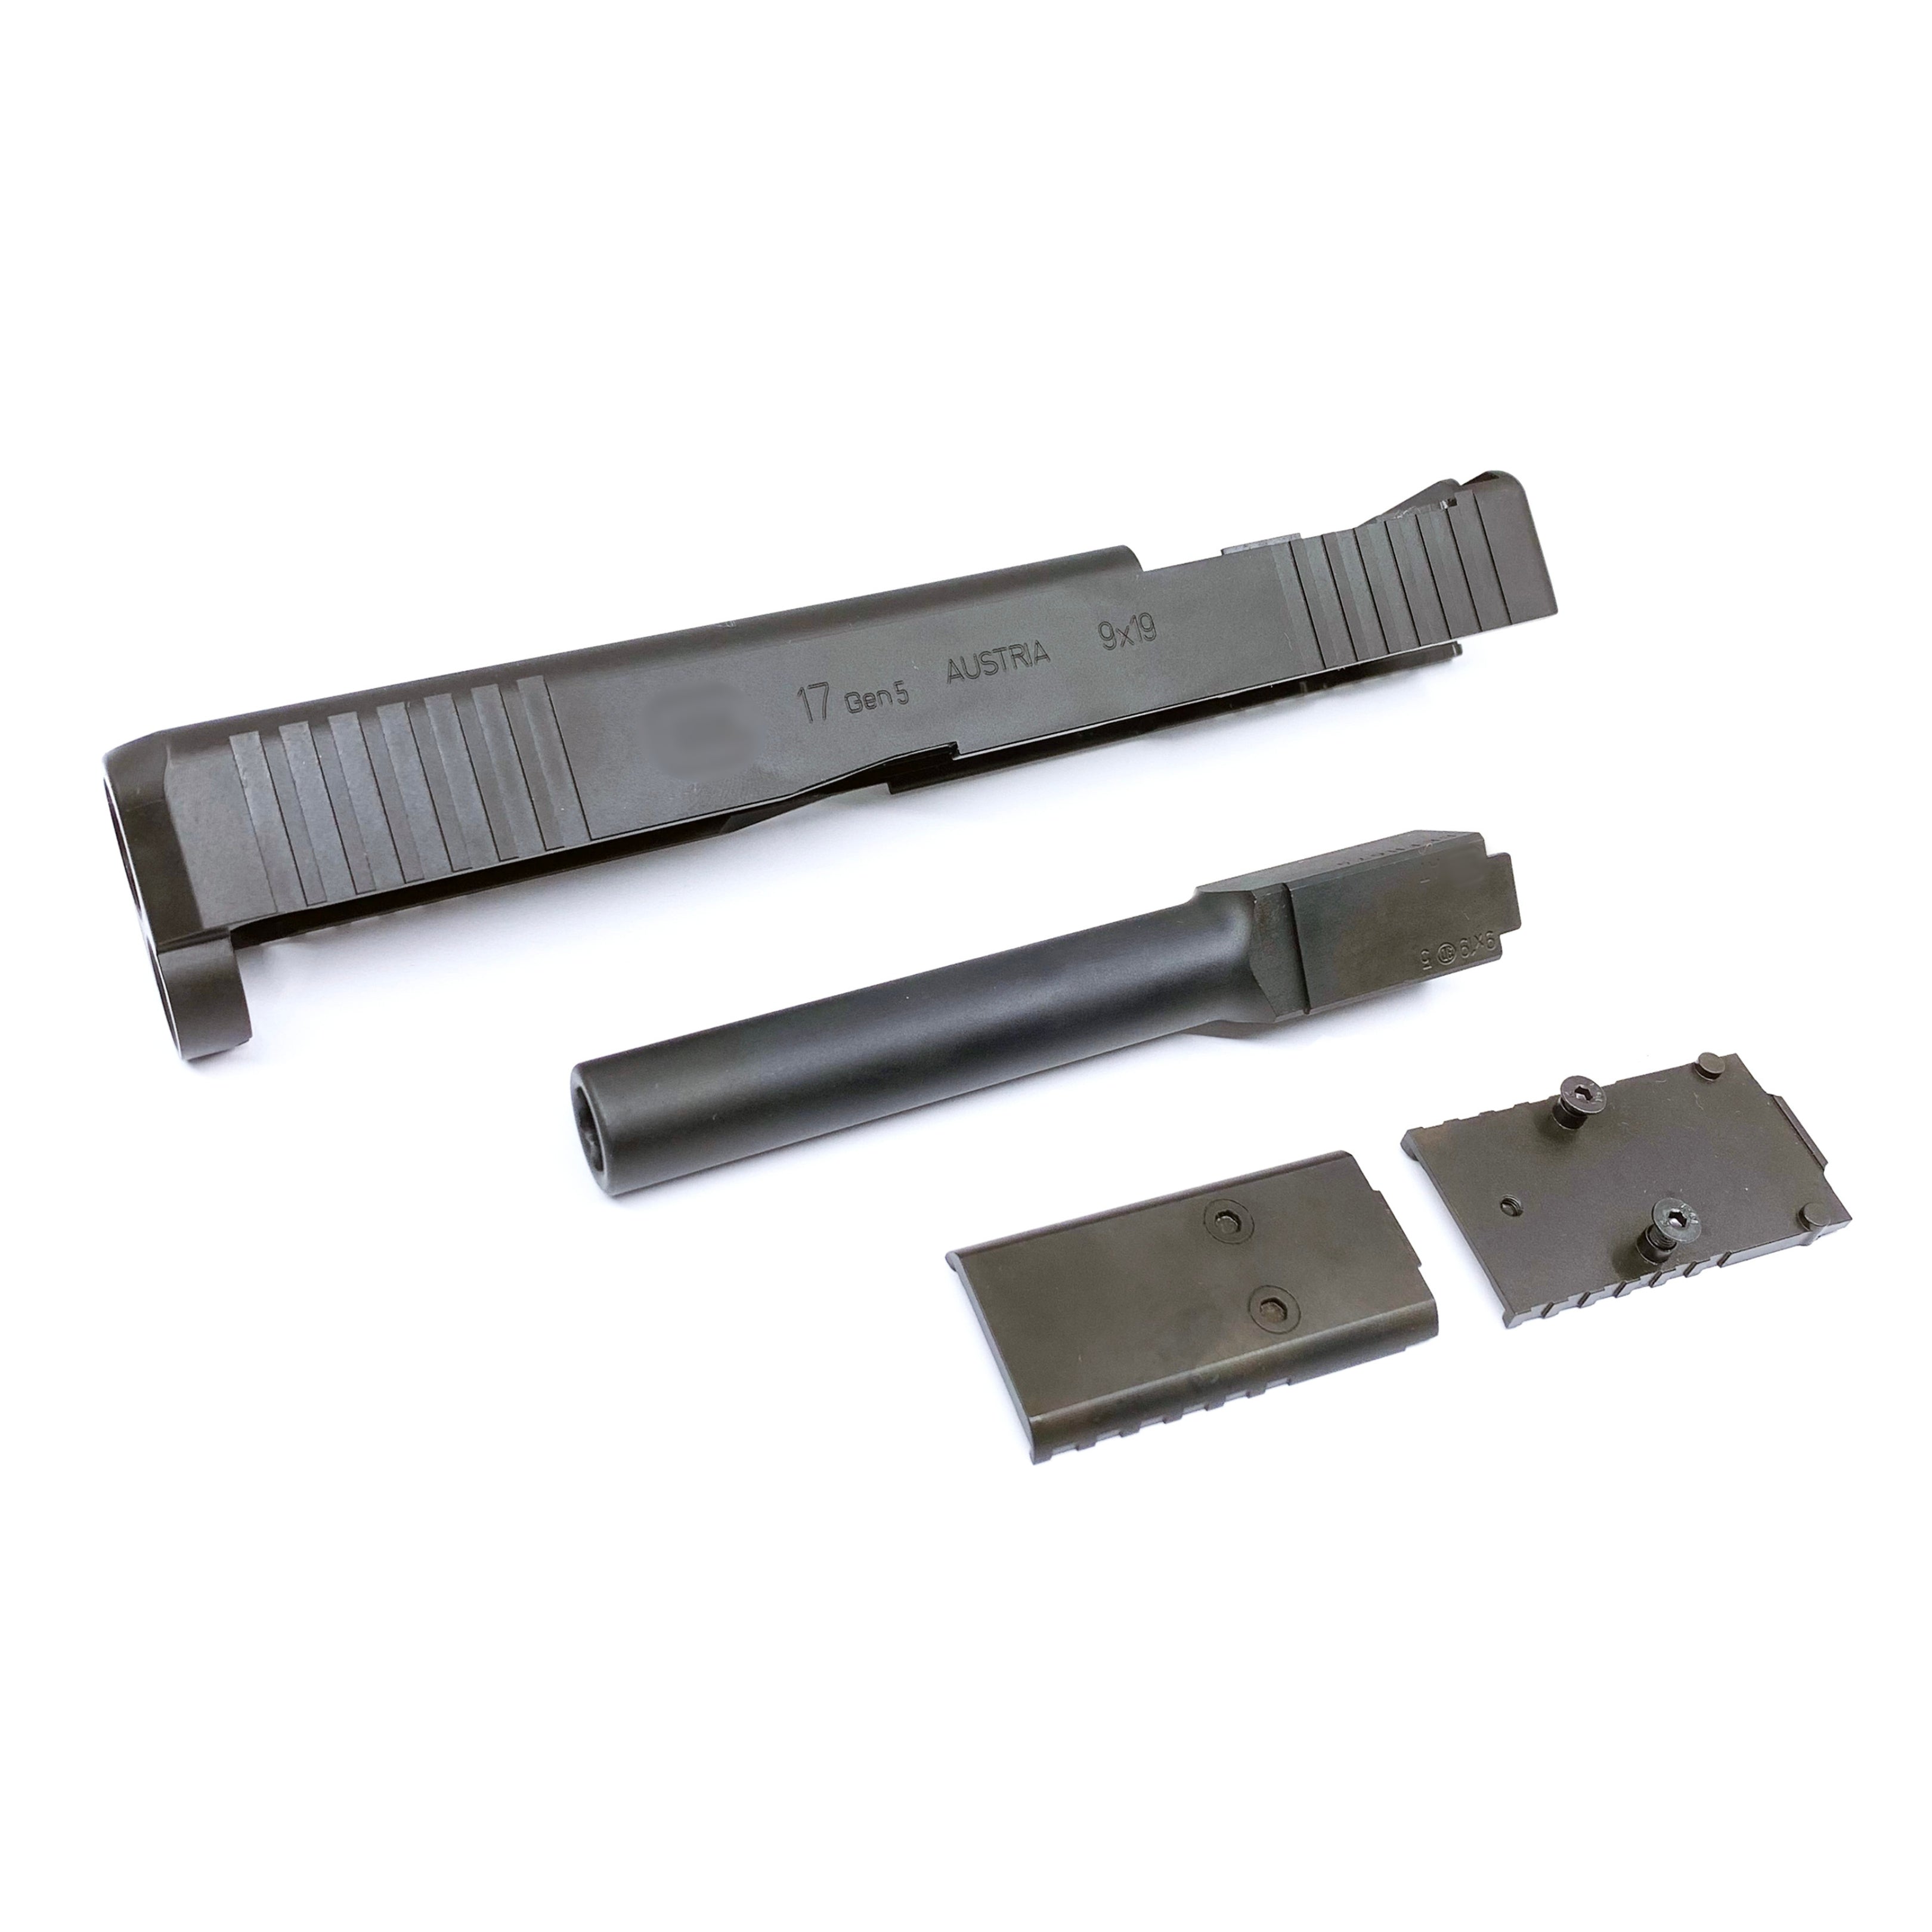 Pro Arms Glock 17 Gen 5 MOS Steel Slide Set (Limited Edition, Black) - Umarex G17 Gen5